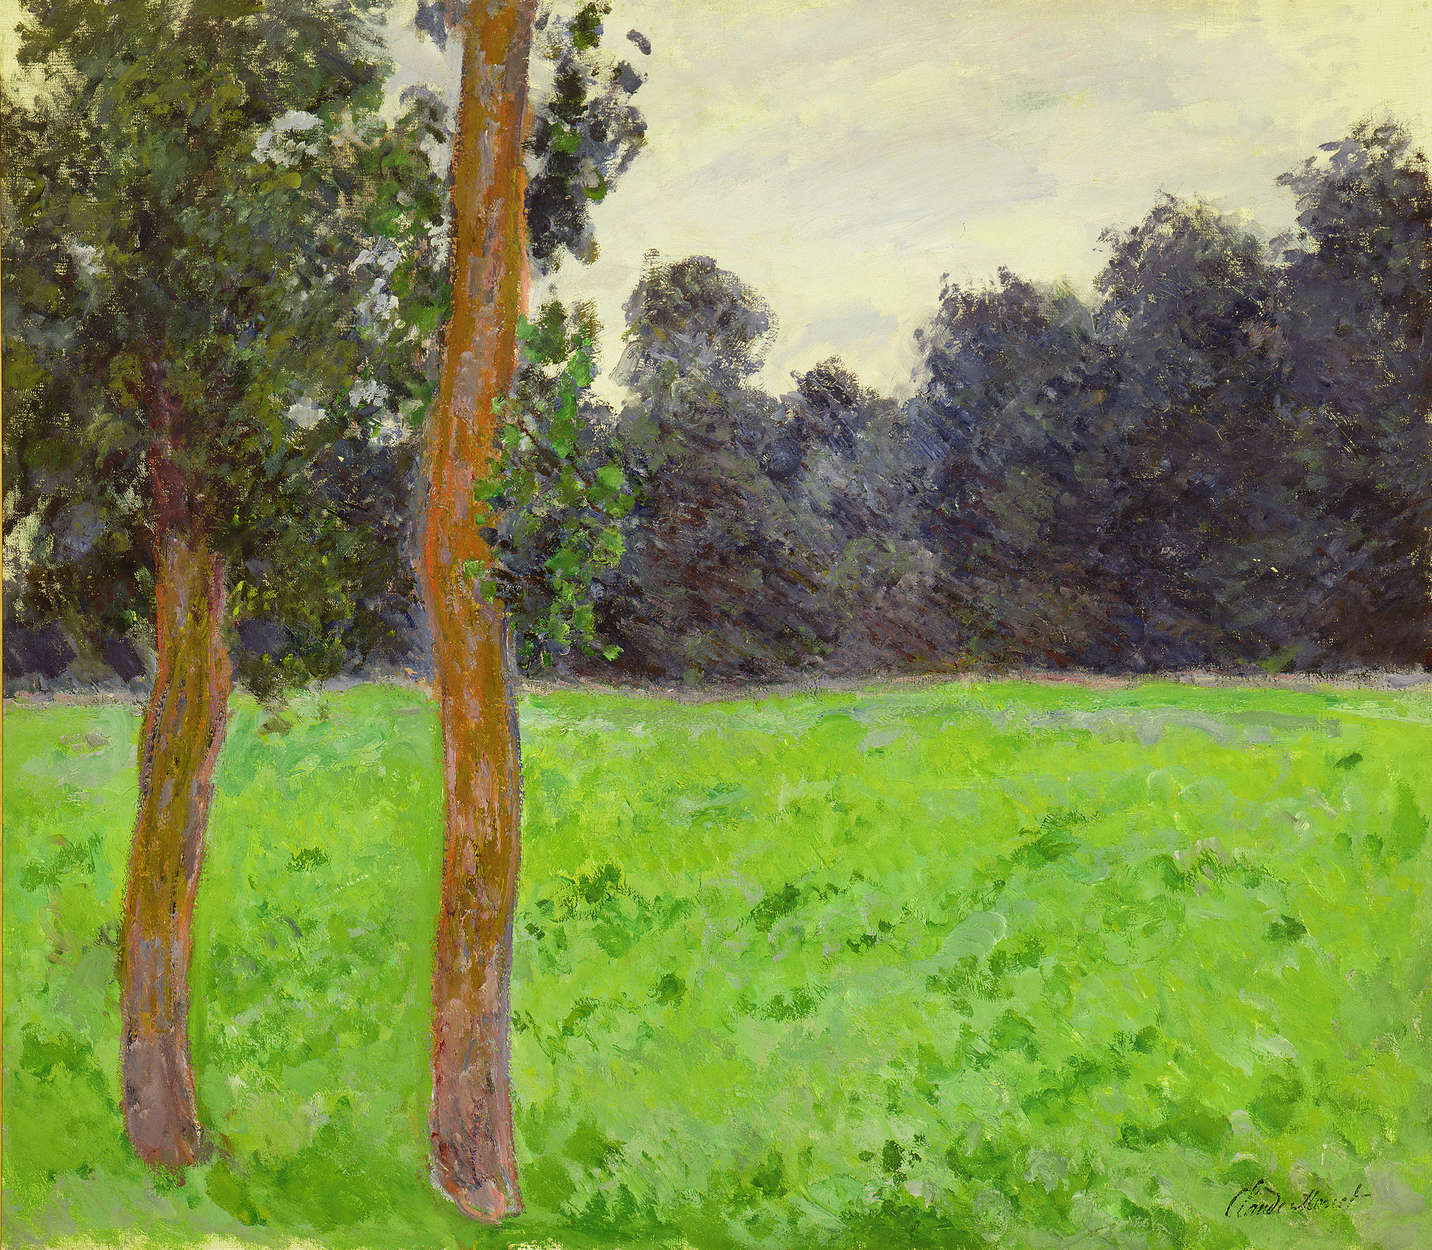             Mural "Dos árboles en un prado" de Claude Monet
        